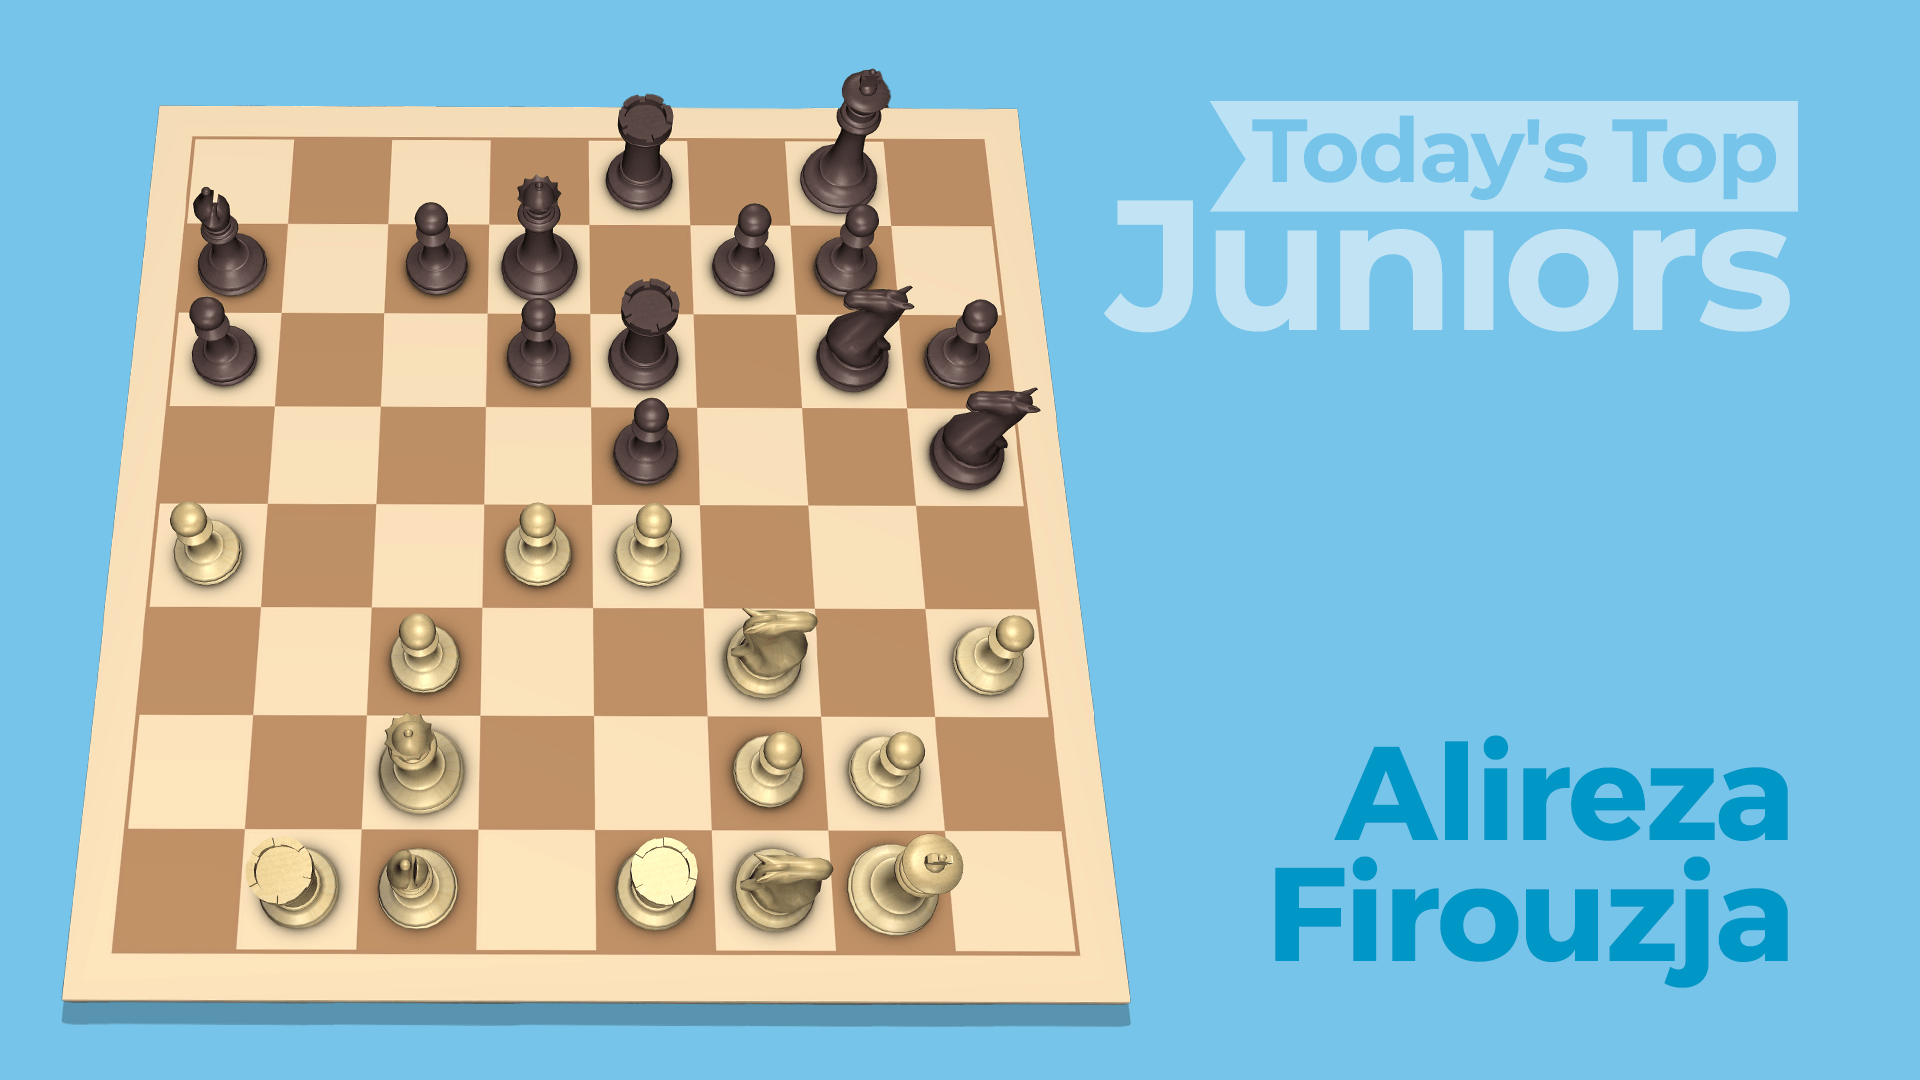 The chess games of Alireza Firouzja